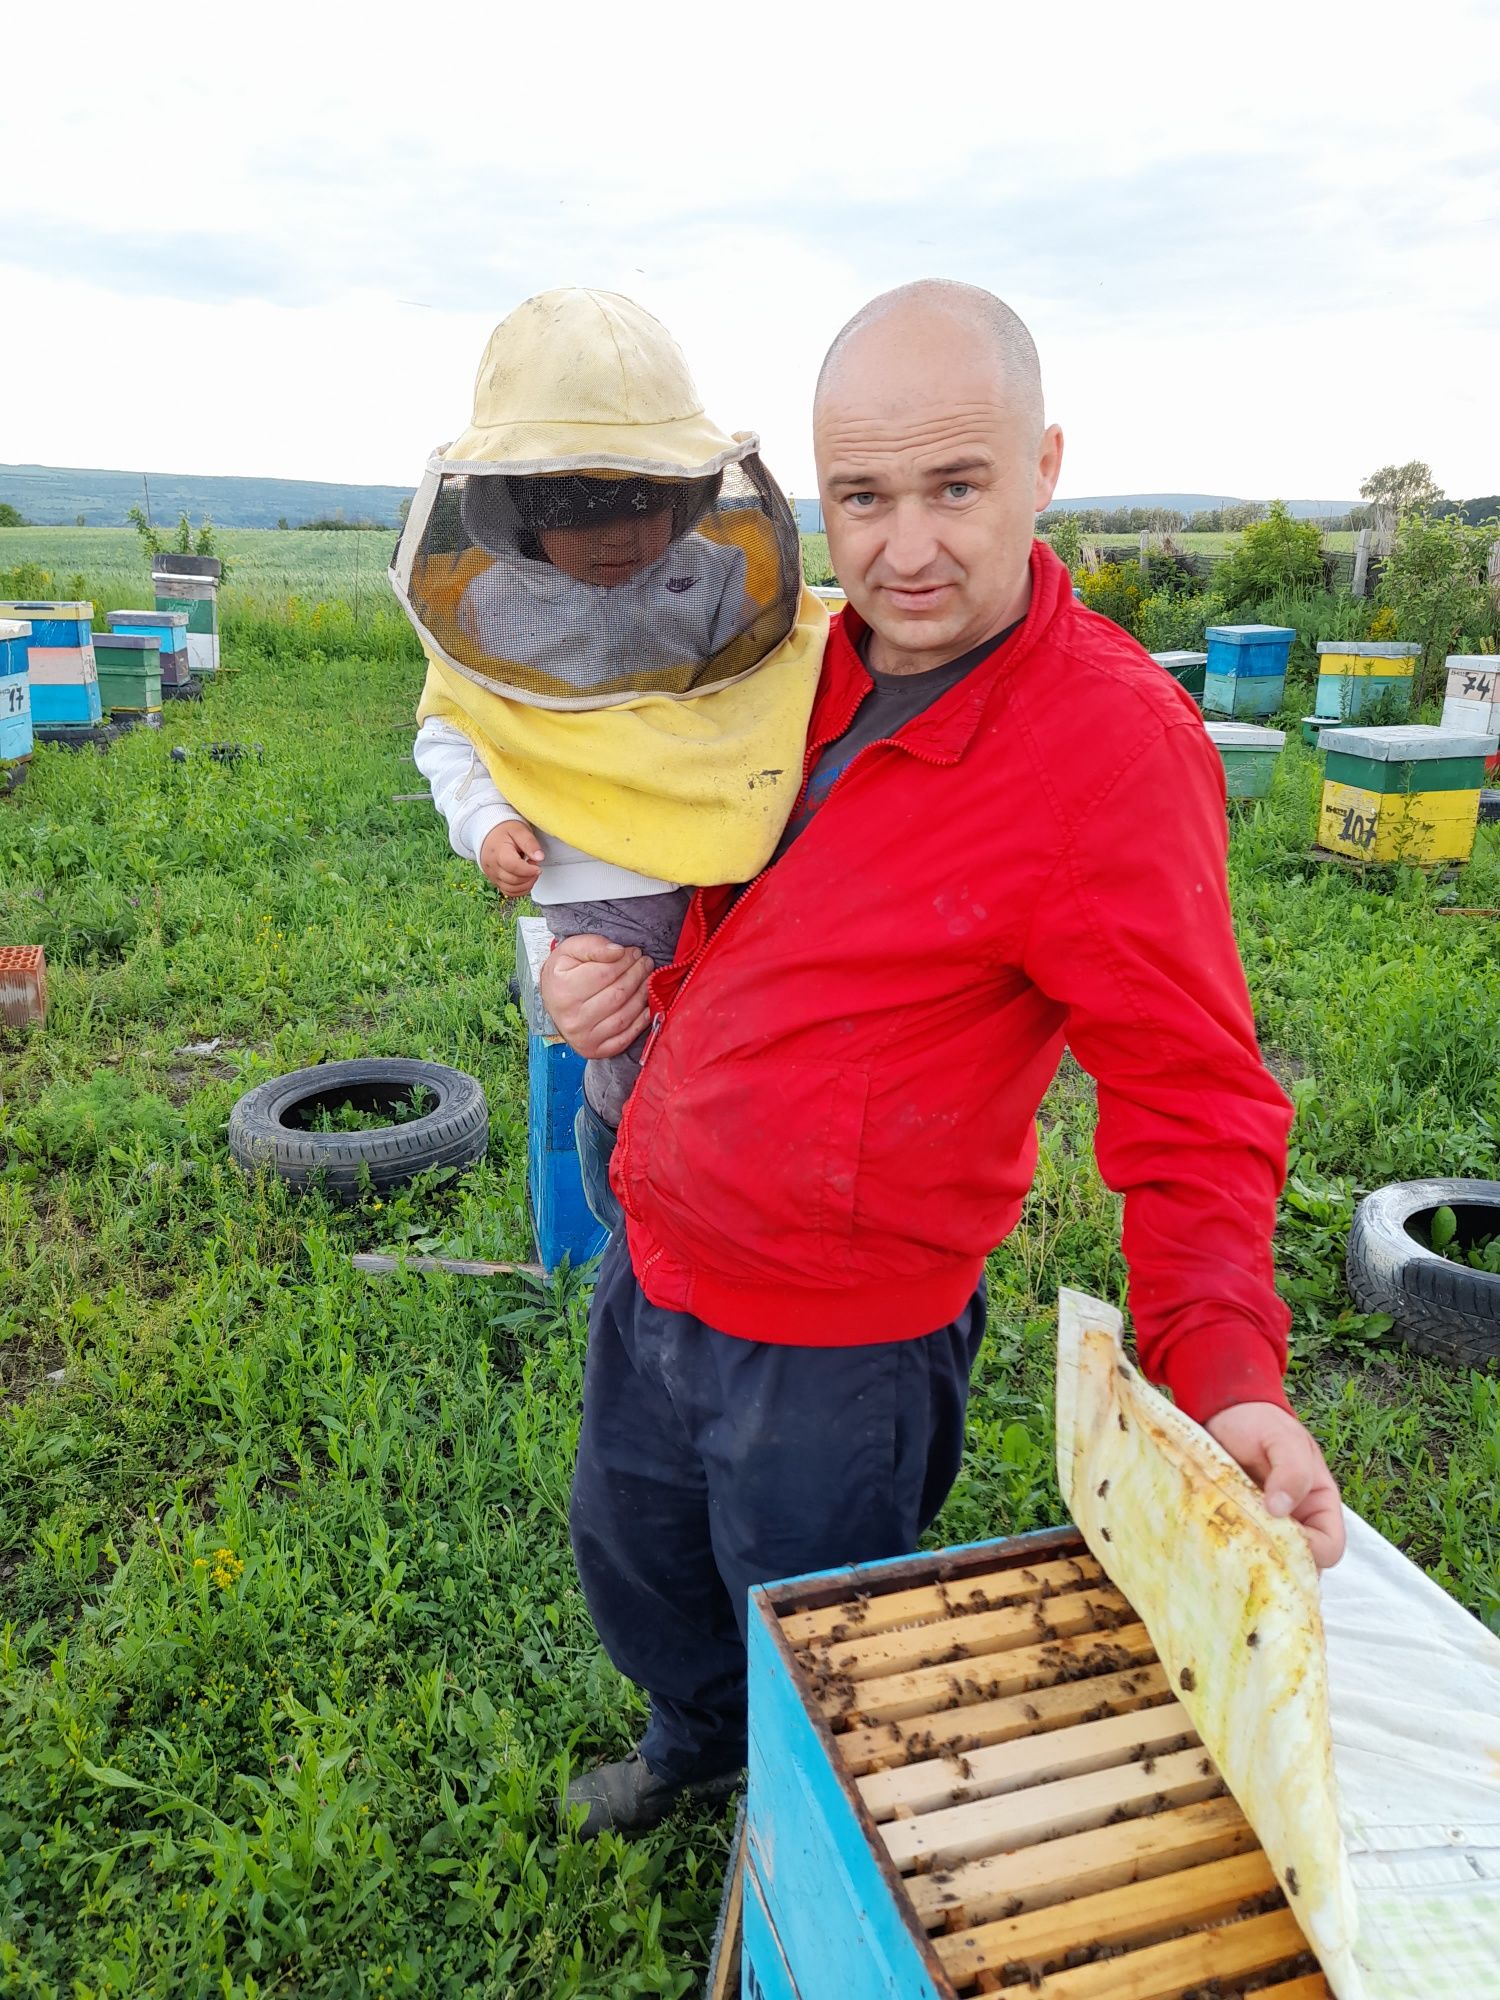 Miere de albine și produse apicole